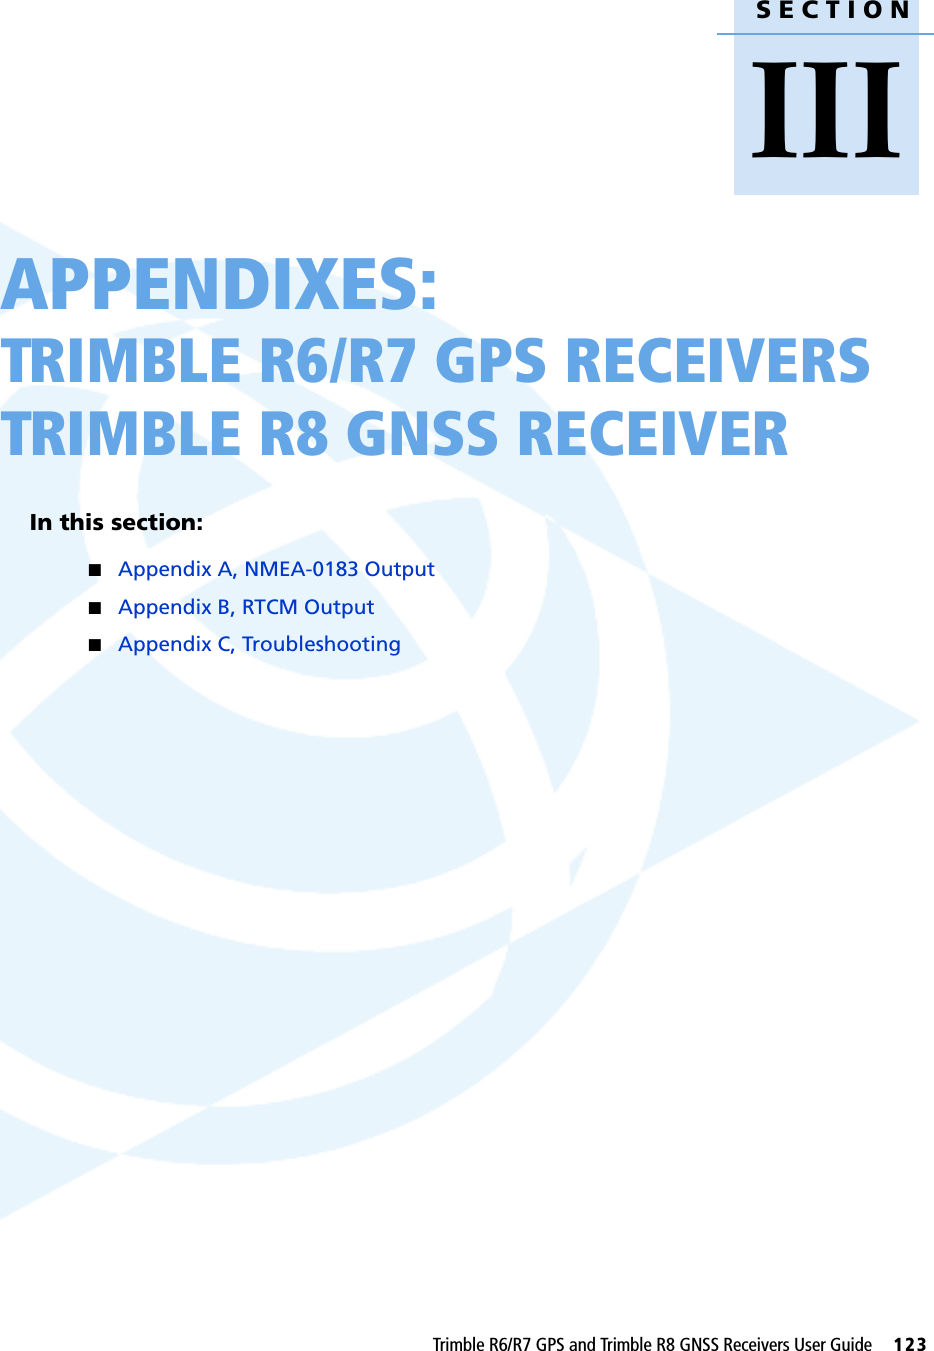 SECTIONIIITrimble R6/R7 GPS and Trimble R8 GNSS Receivers User Guide     123APPENDIXES:TRIMBLE R6/R7 GPS RECEIVERSTRIMBLE R8 GNSS RECEIVER IIIIn this section:QAppendix A, NMEA-0183 OutputQAppendix B, RTCM OutputQAppendix C, Troubleshooting